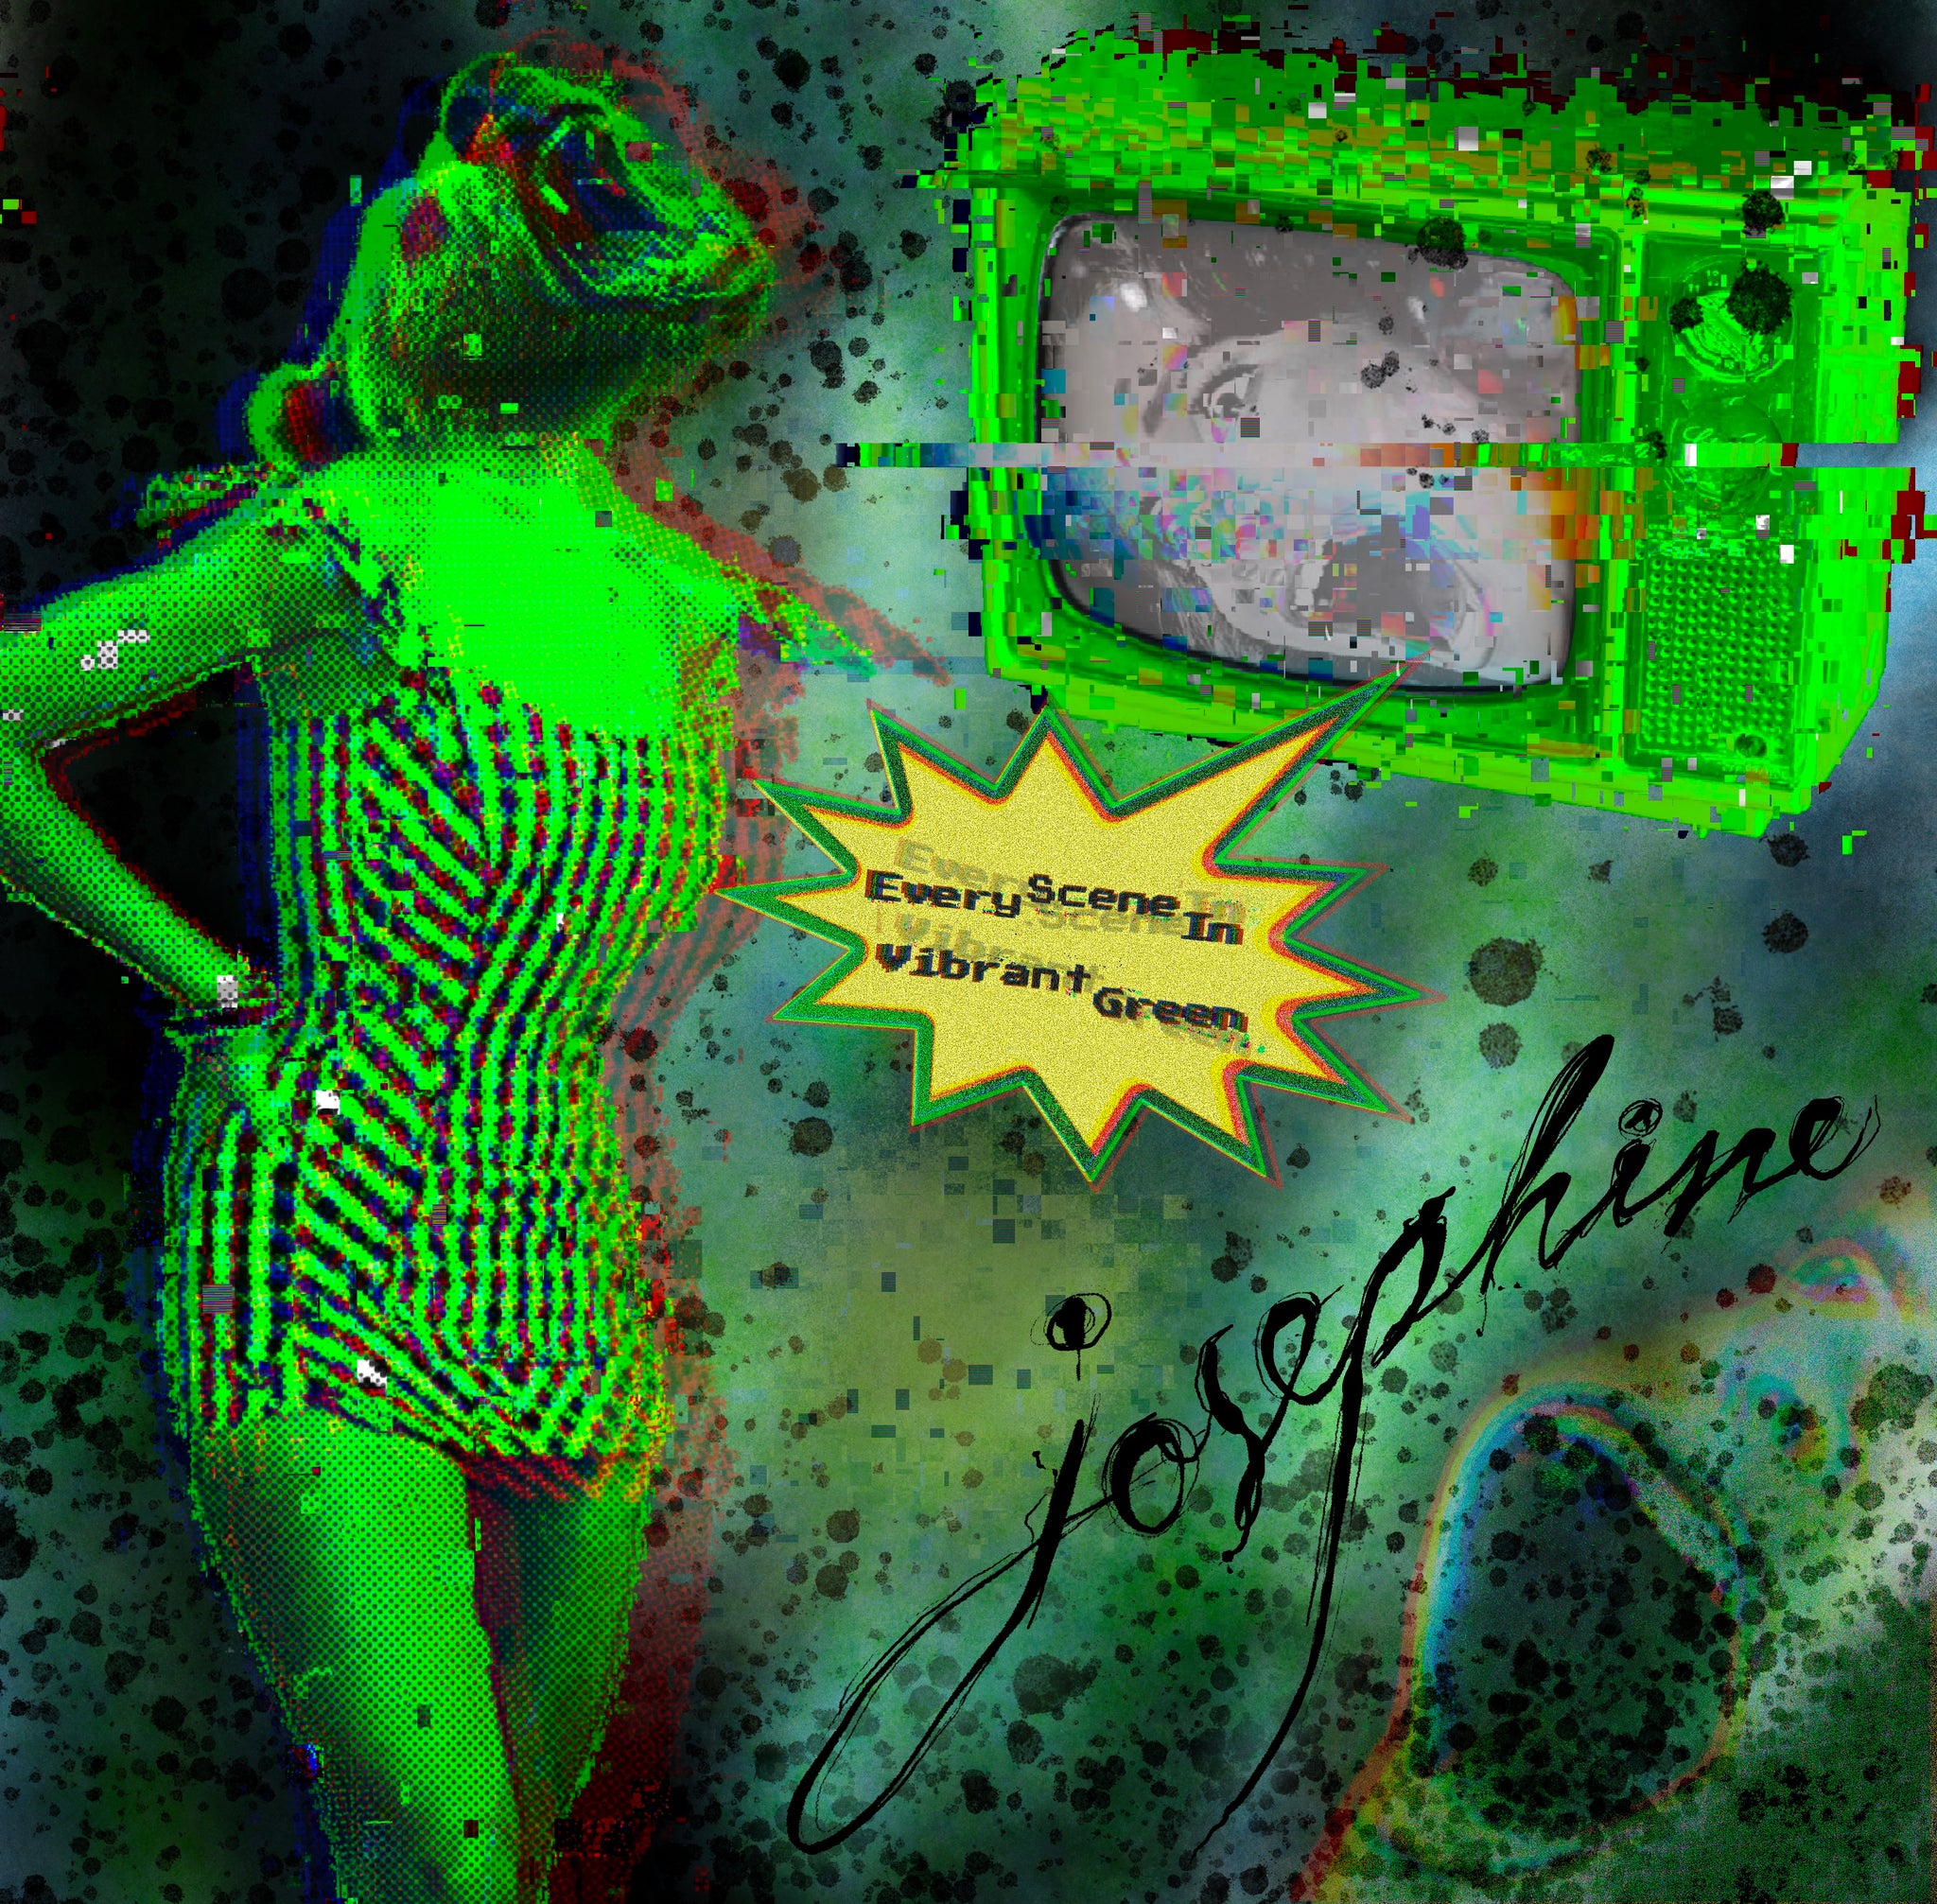 JOSEPHINE - Every Scene In Vibrant Green (cassette)